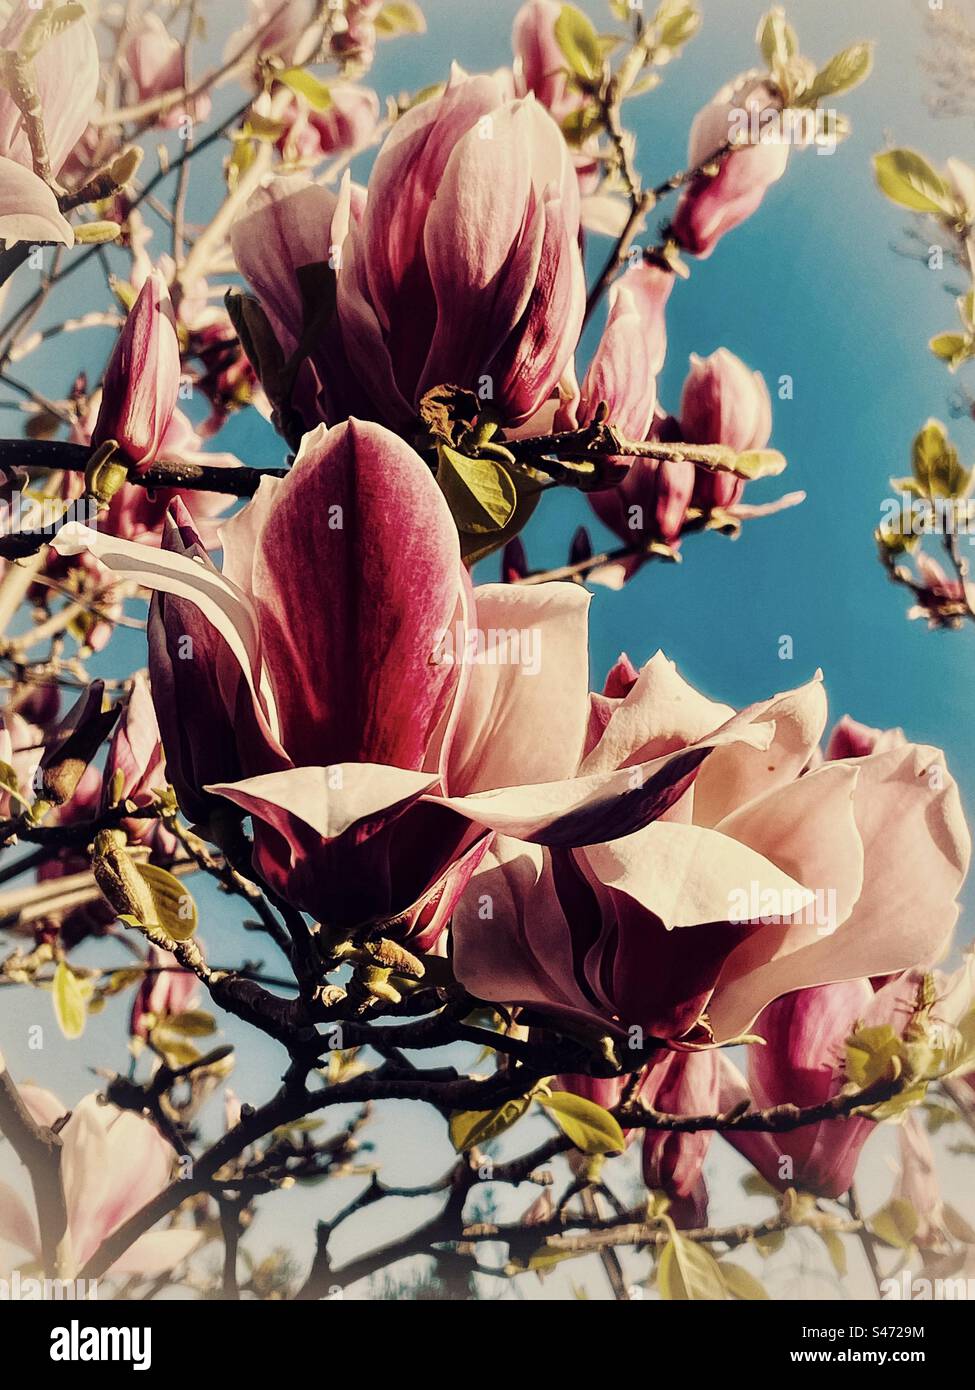 Plan rapproché artistique de Magnolia liiflora ou plante à fleurs de magnolia japonais en fleur contre le ciel bleu. Look vintage. Thème du printemps. Banque D'Images